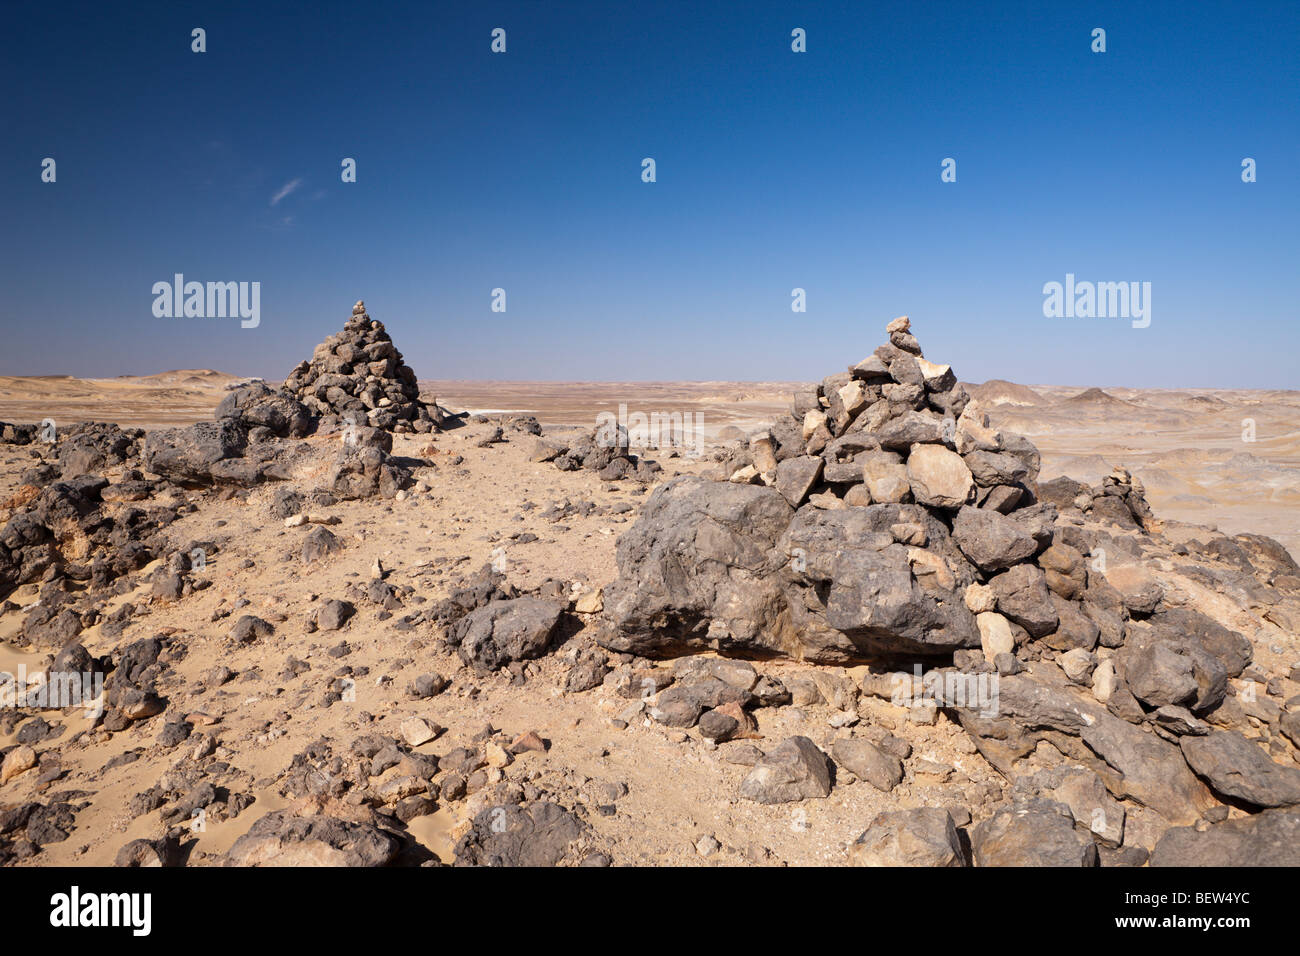 Avis de désert de Crystal Mountain, Désert de Libye, Egypte Banque D'Images